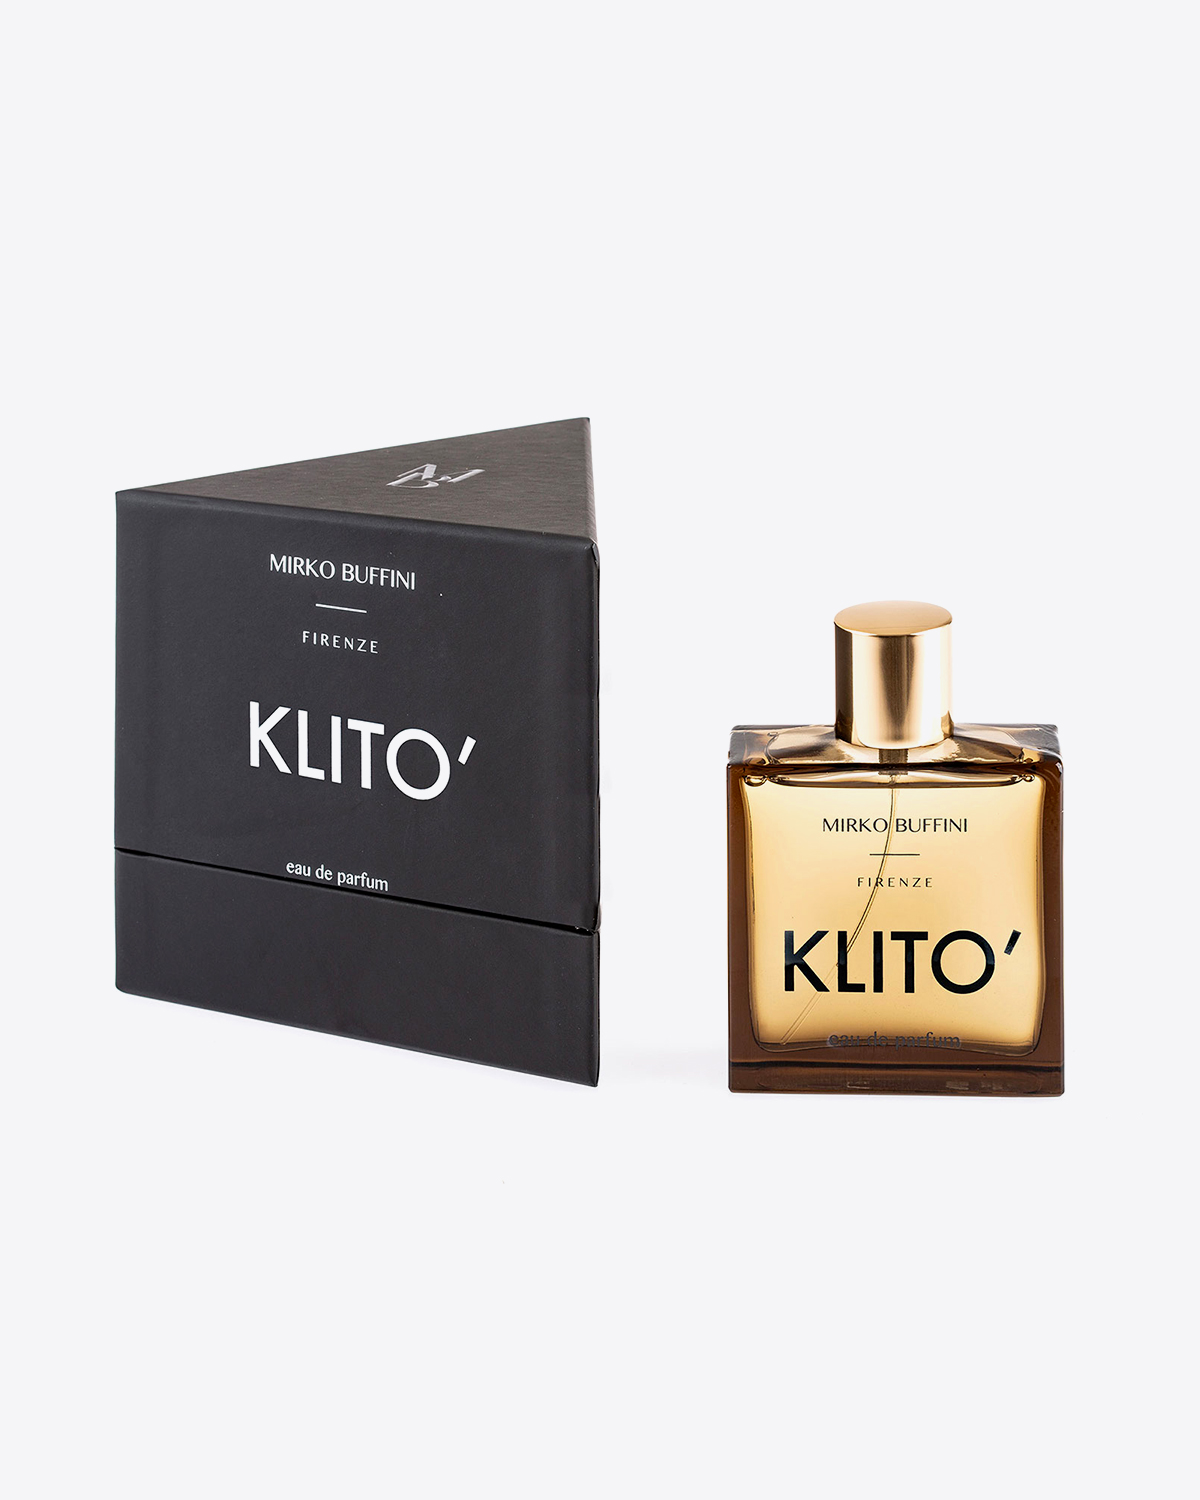 Parfum Klito Mirko Buffini. Flacon de 100 ml vendu avec sa boite rectangulaire noire. Collection Black.